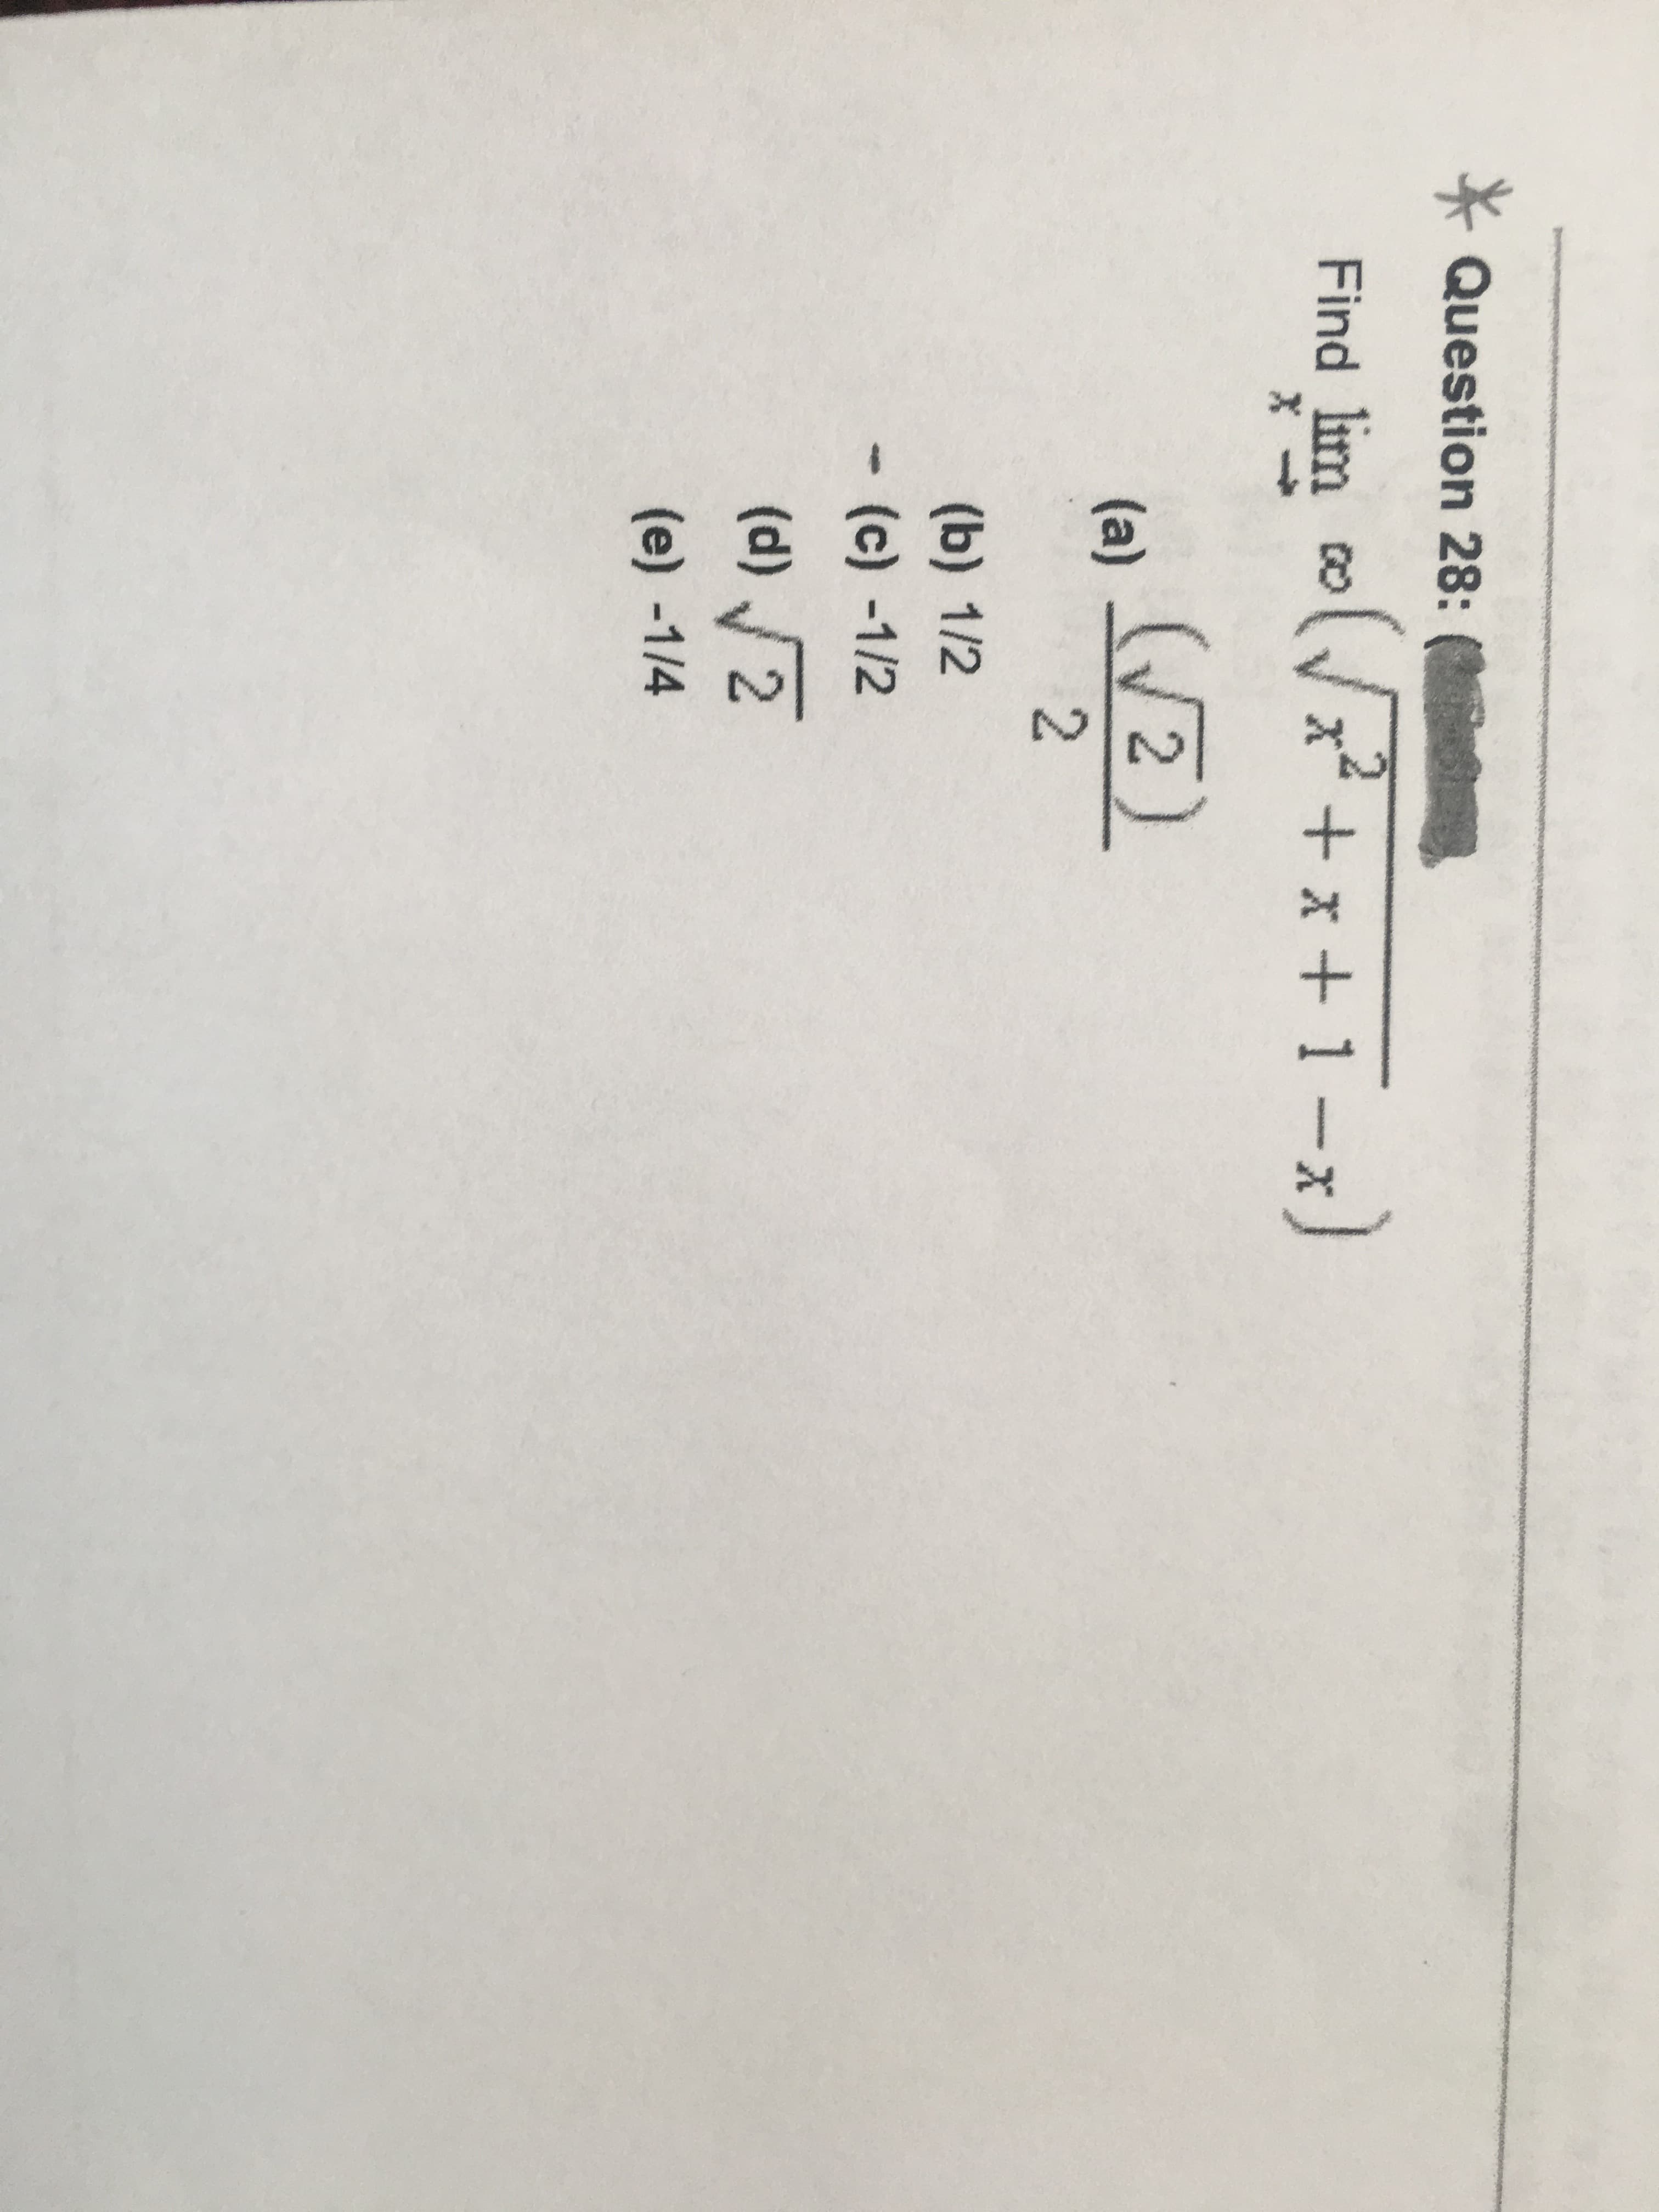 2.
* Question 28: (
Find lim oVx + x + 1-x
Find lim co
x* + x+ 1
-x)
(2)
(a)
(b) 1/2
(c) -1/2
(d) 2
(e) -1/4
